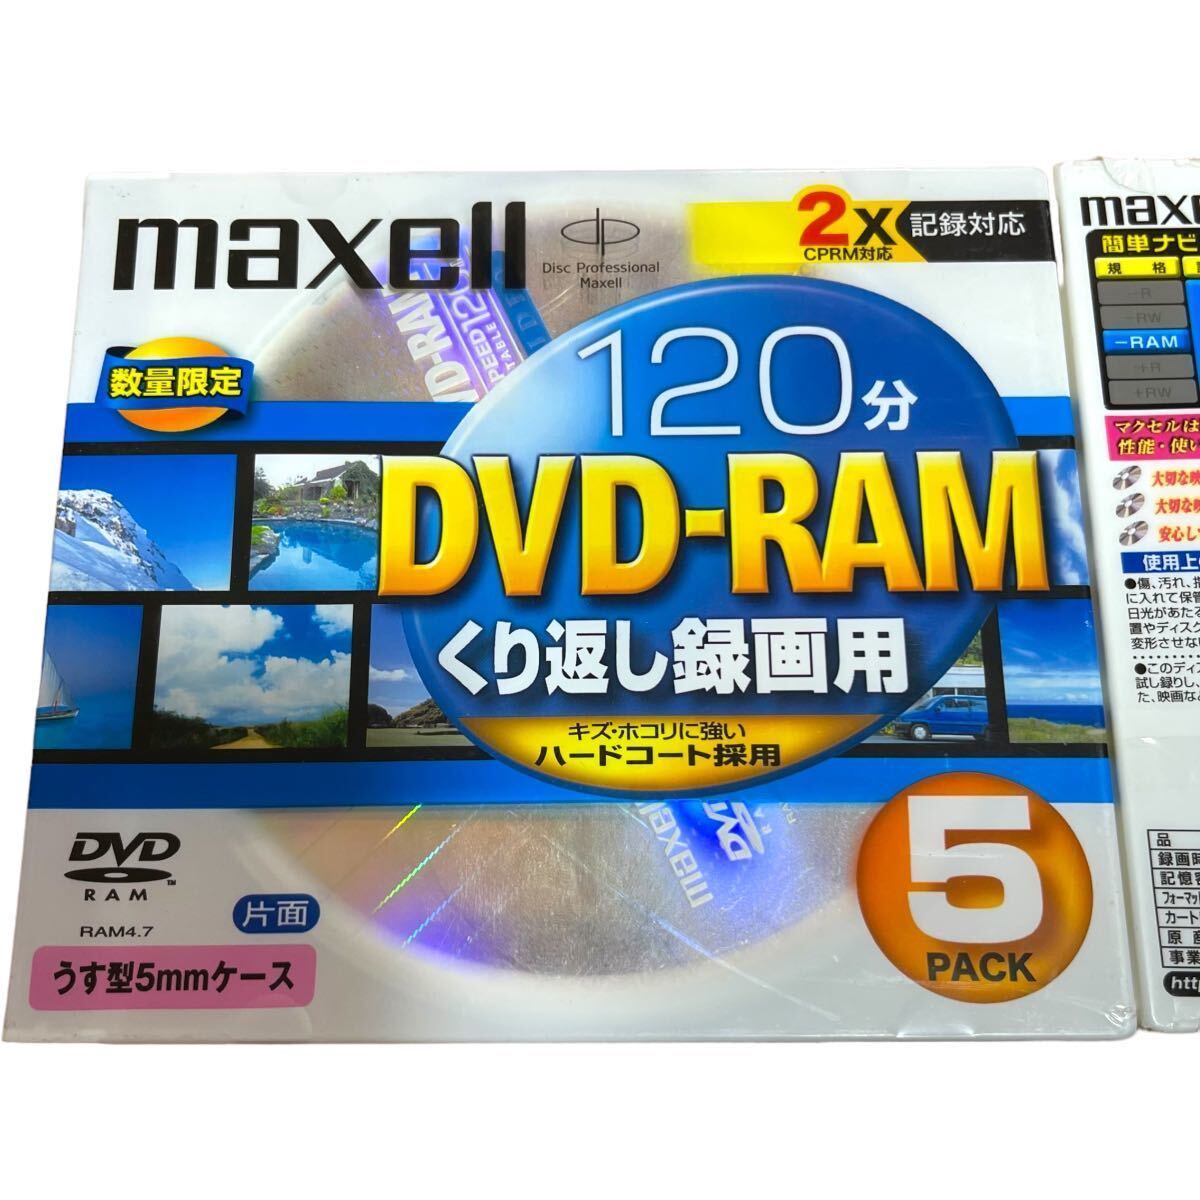 未開封 maxell マクセル DVD-RAM 4.7GB 片面120分 うす型5mmケース 計10枚 くり返し録画用 2X記録対応 CPRM対応 ハードコート DRM120ST_画像3